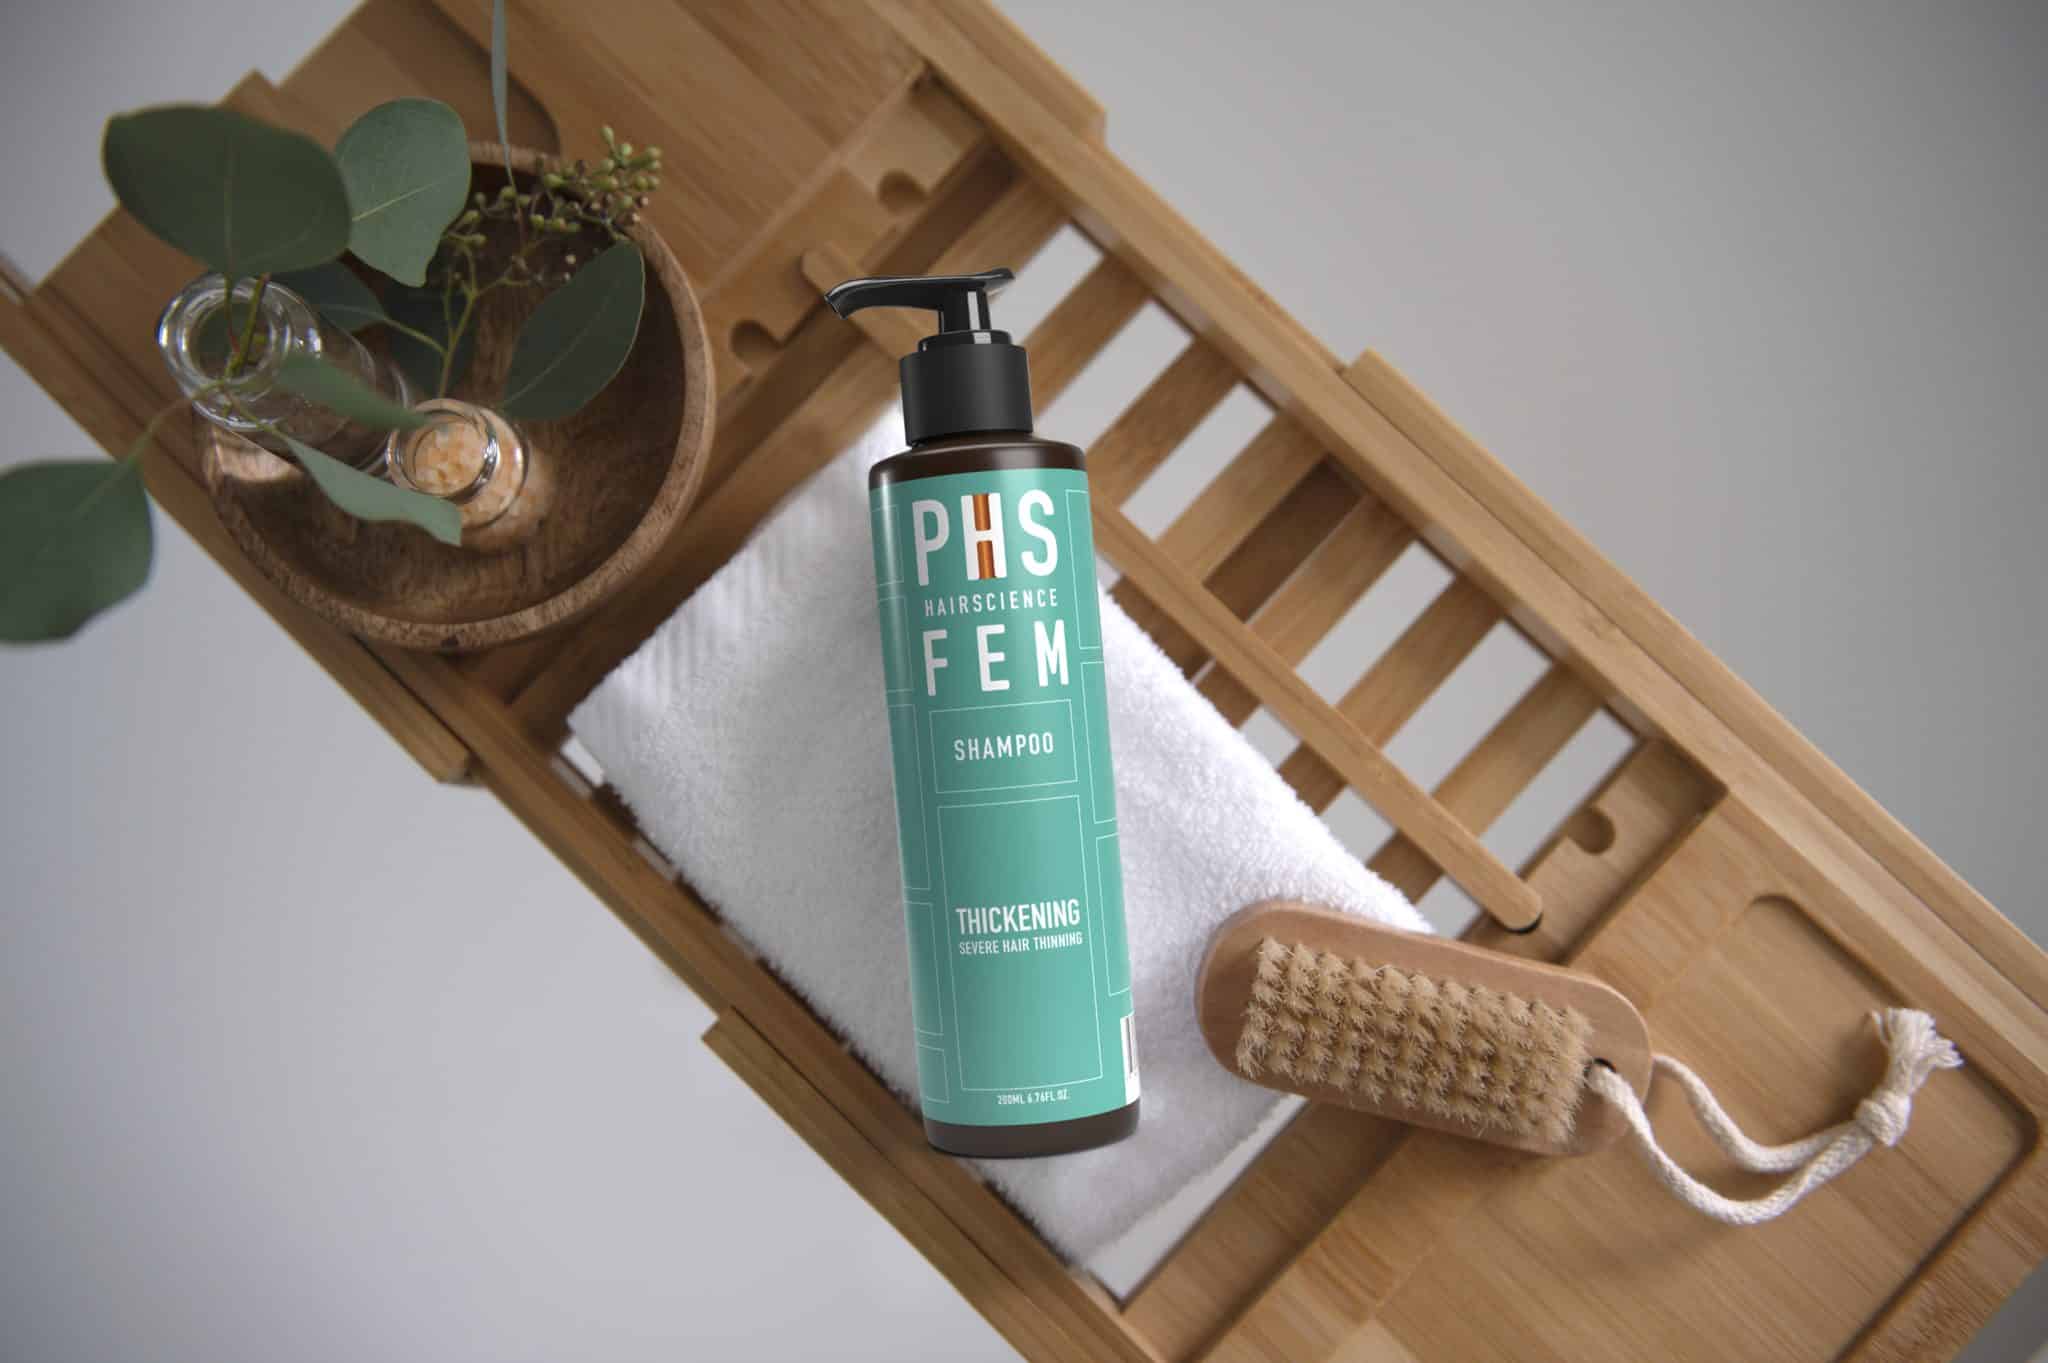 phs-hairscience-fem-thickening-shampoo